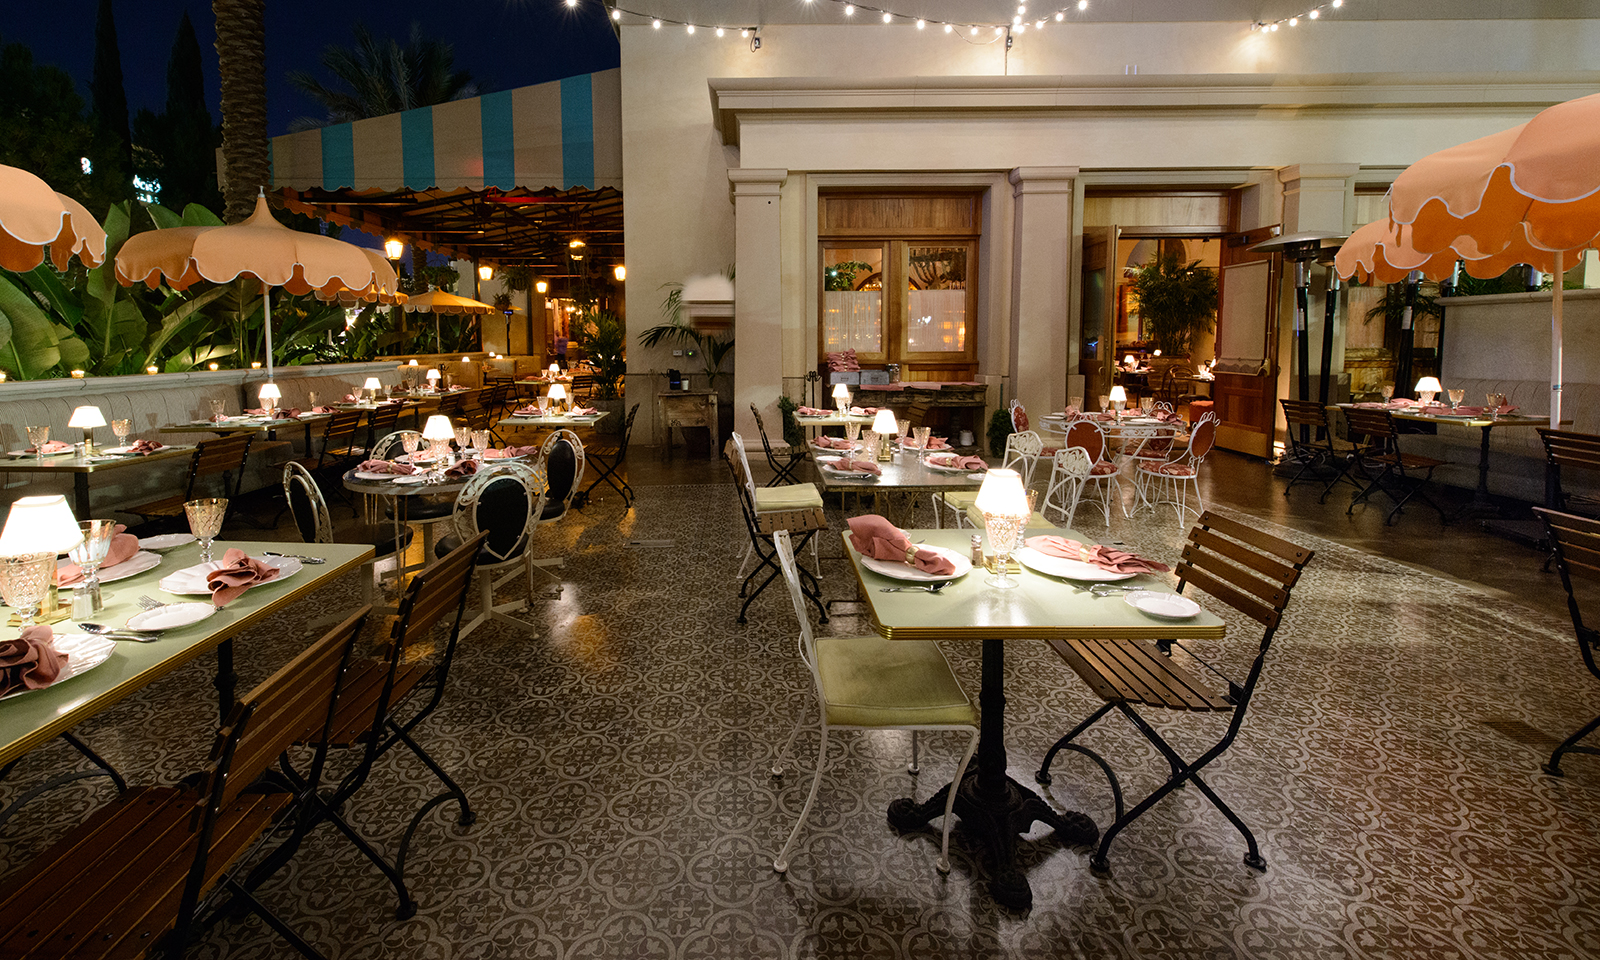 Next-level patio dining at Irvine Spectrum